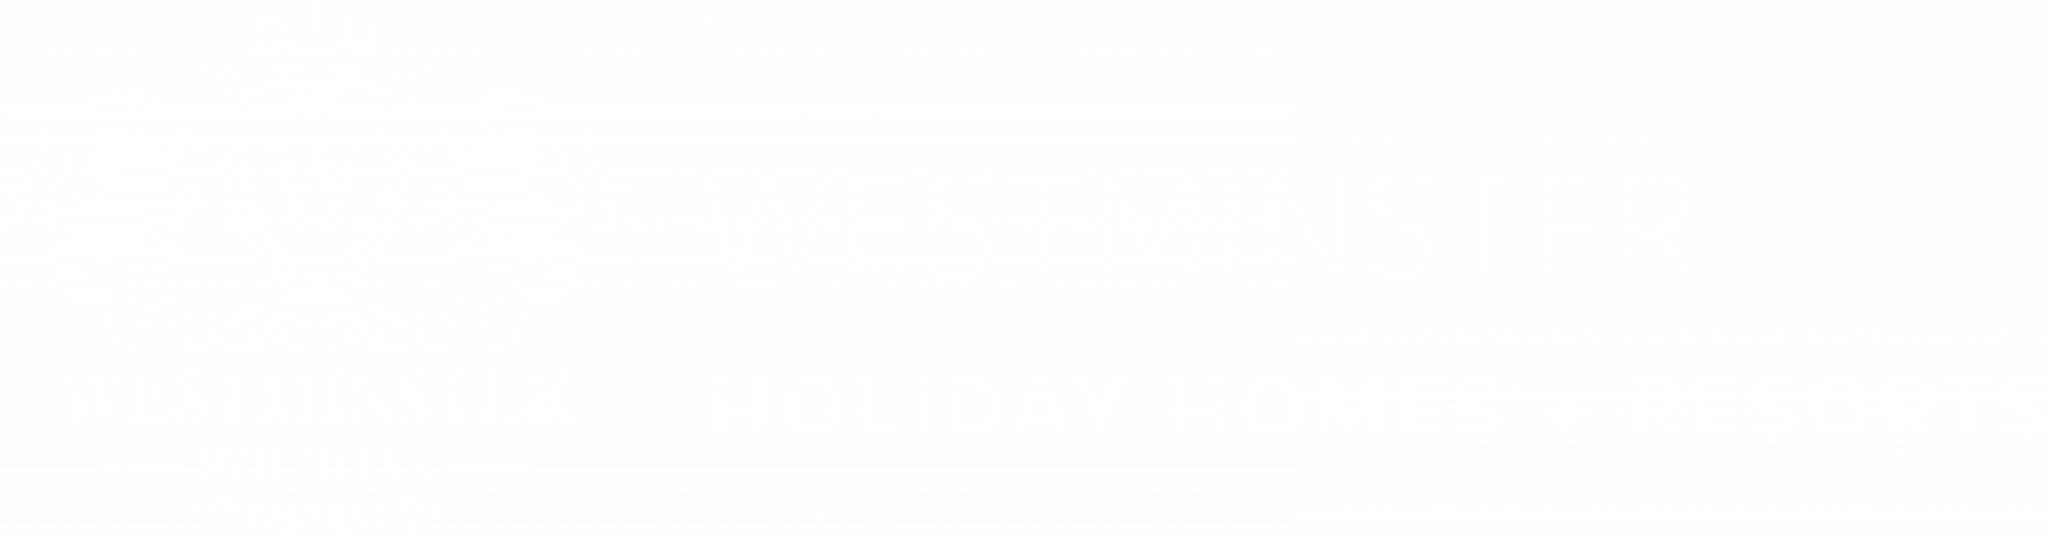 Вестминстер Отели + Курорты + Дома отдыха